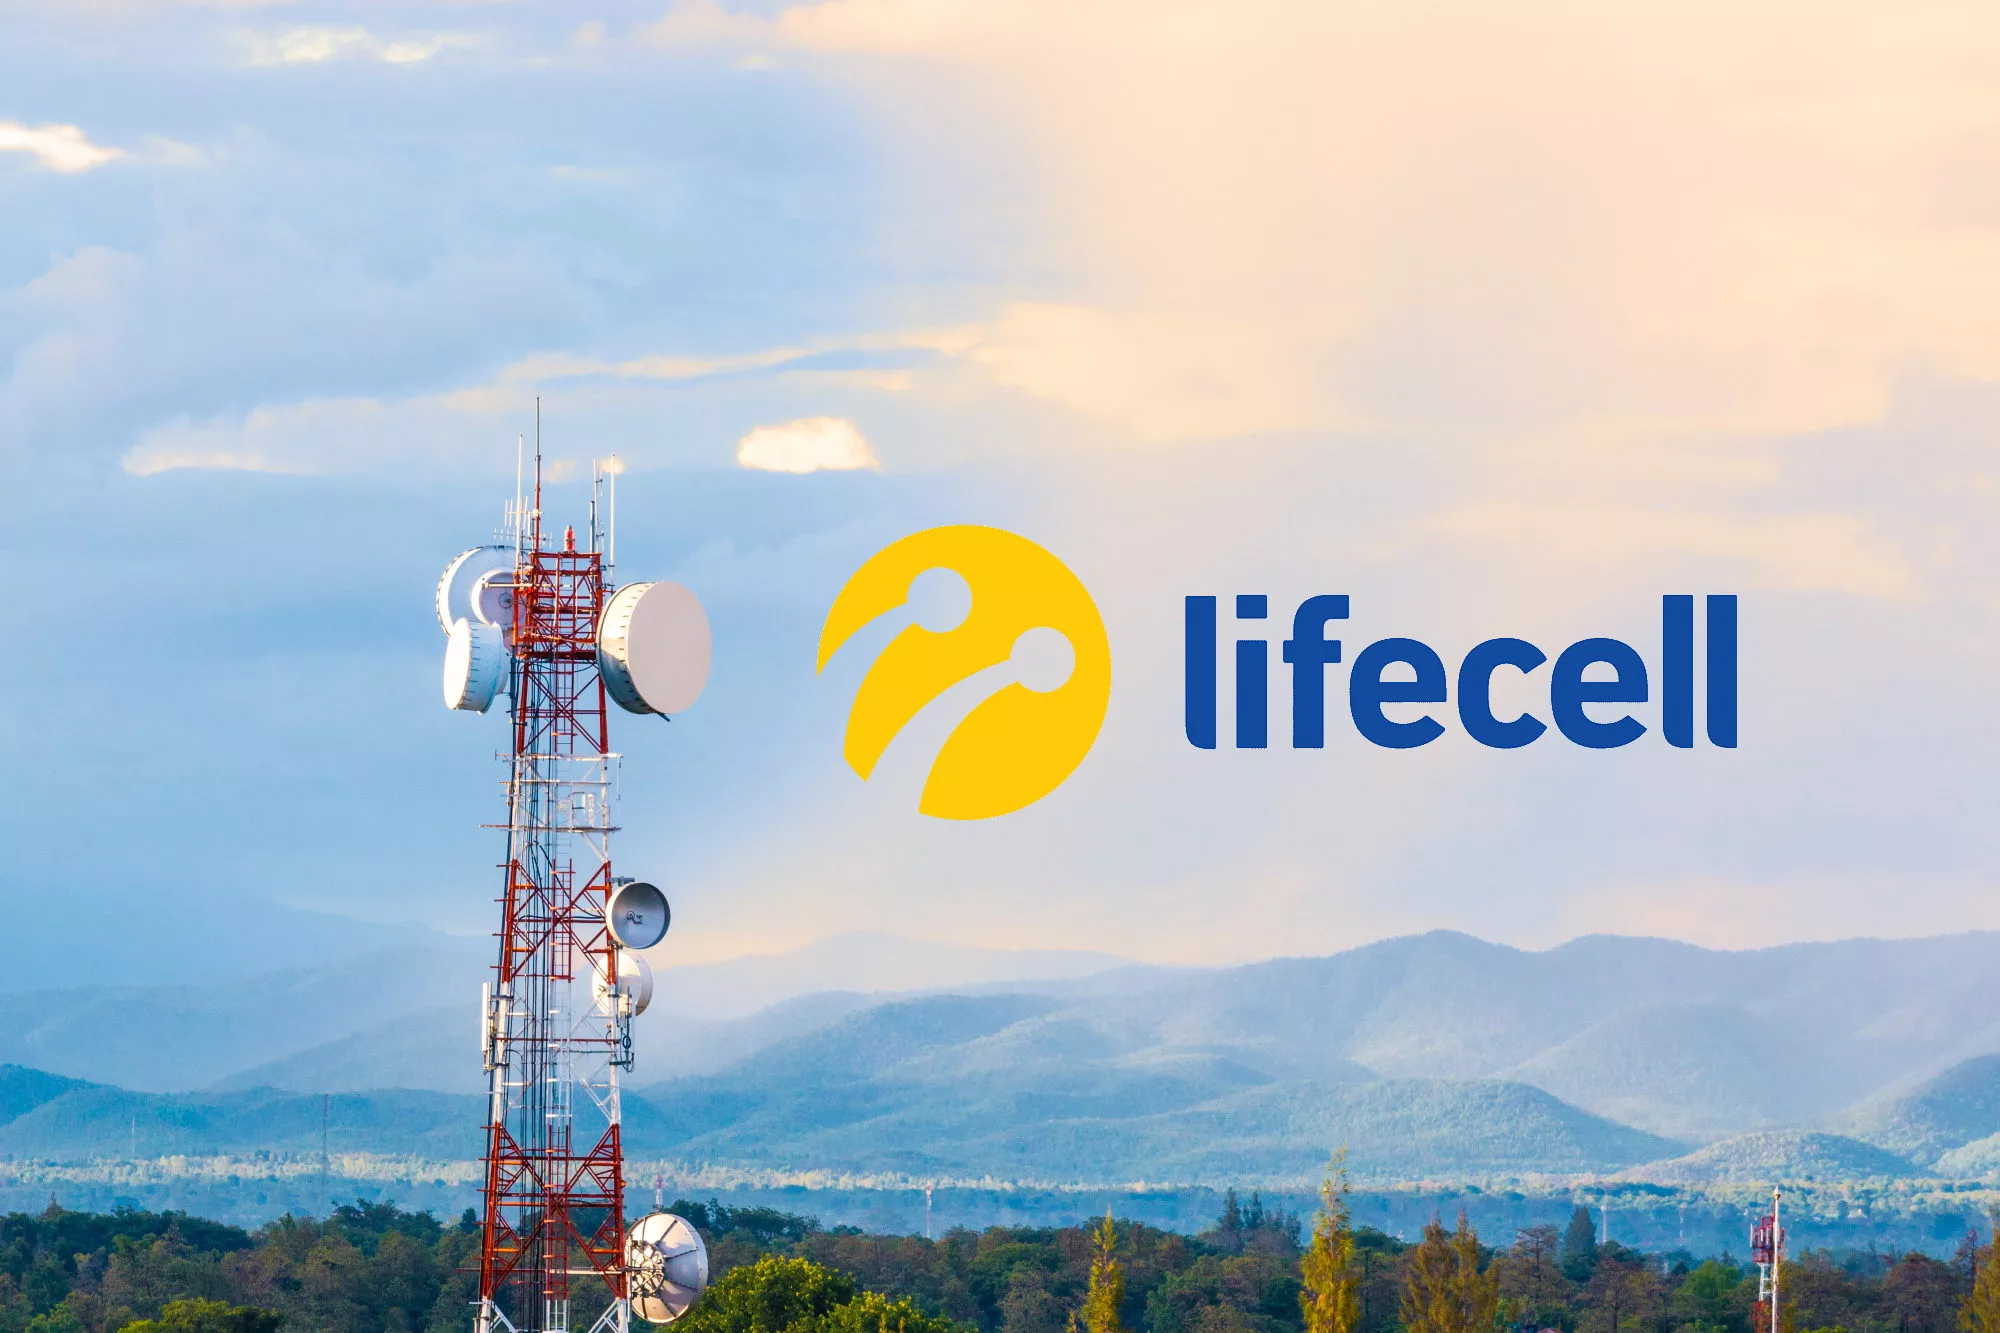 lifecell продлил бесплатно услугу до конца апреля в 30 странах